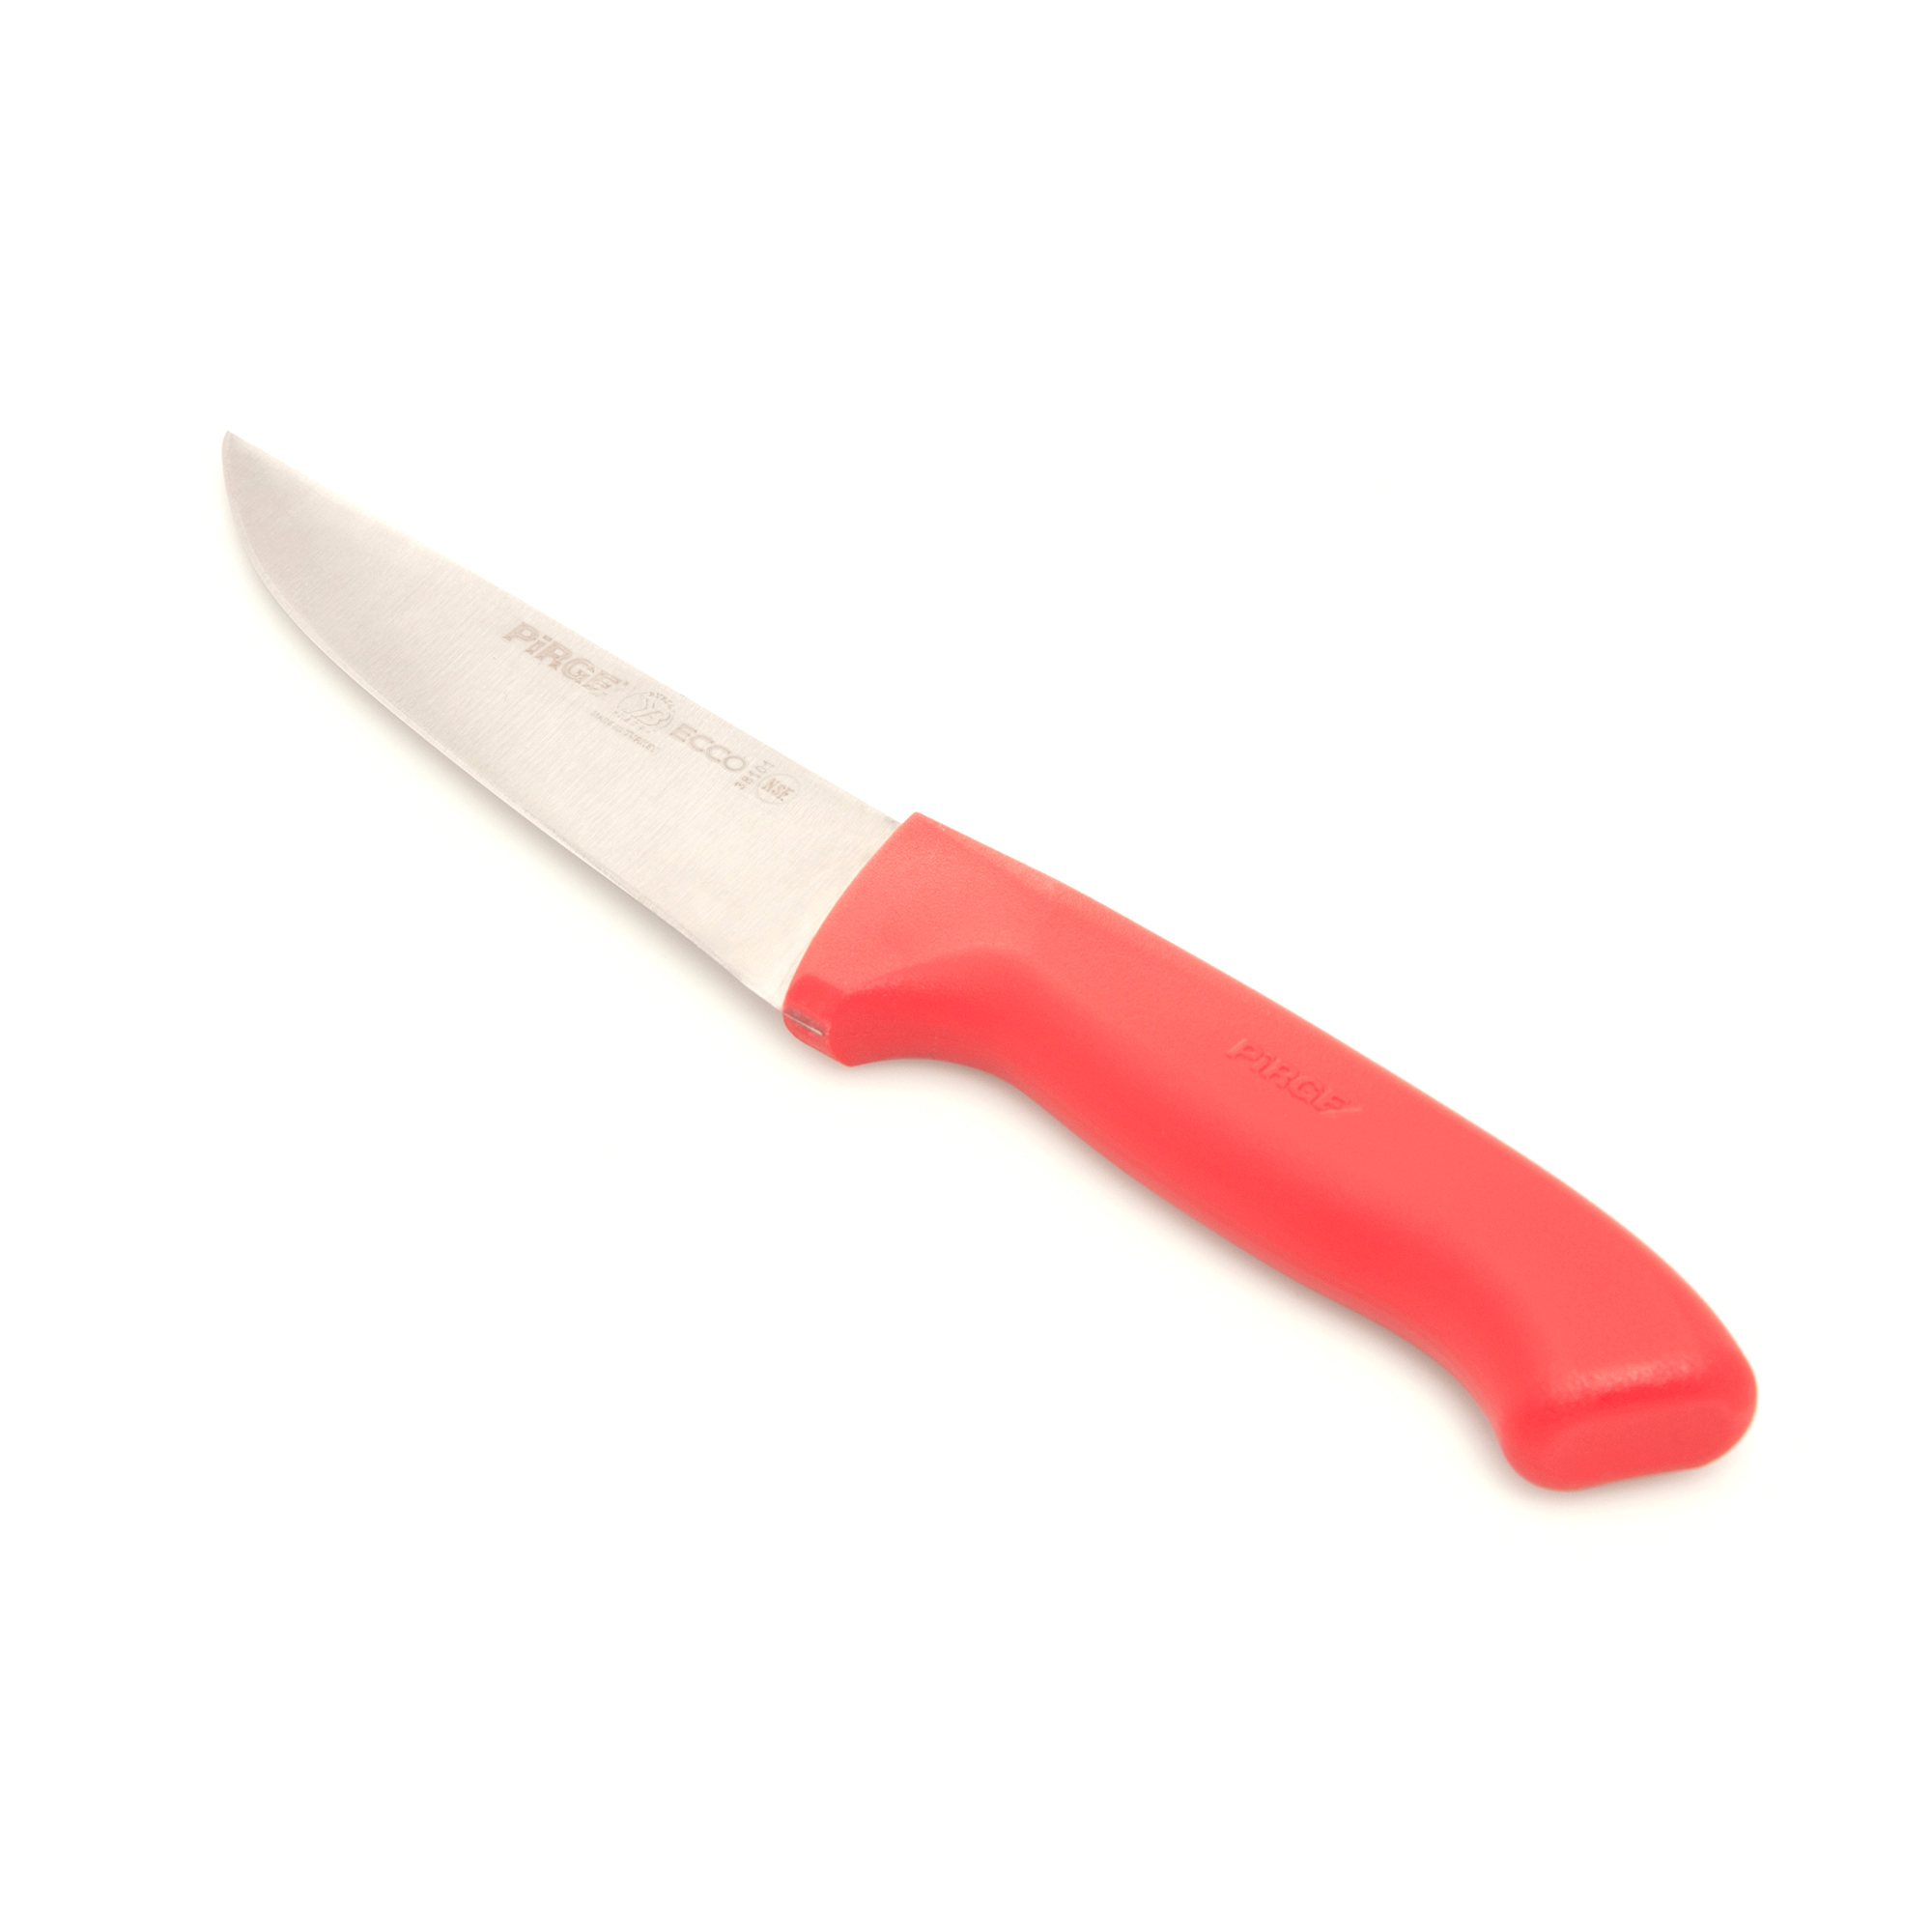 Et Bıçağı Fiyatları Et Bıçağı Modelleri Evidea